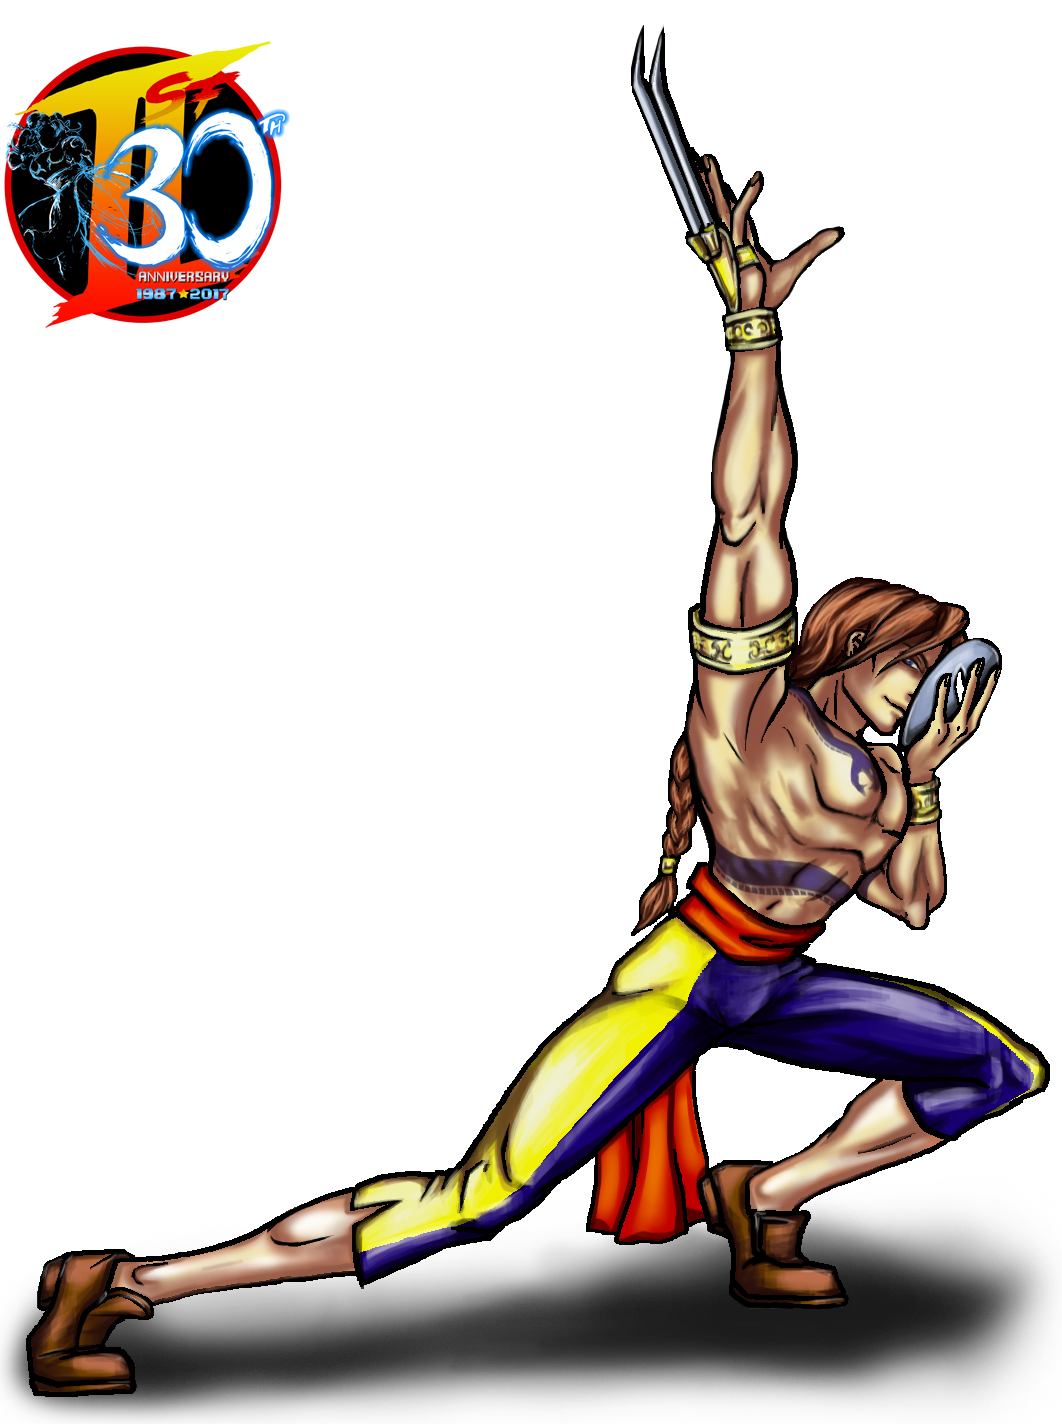 Vega from Super Street Fighter 2 Turbo